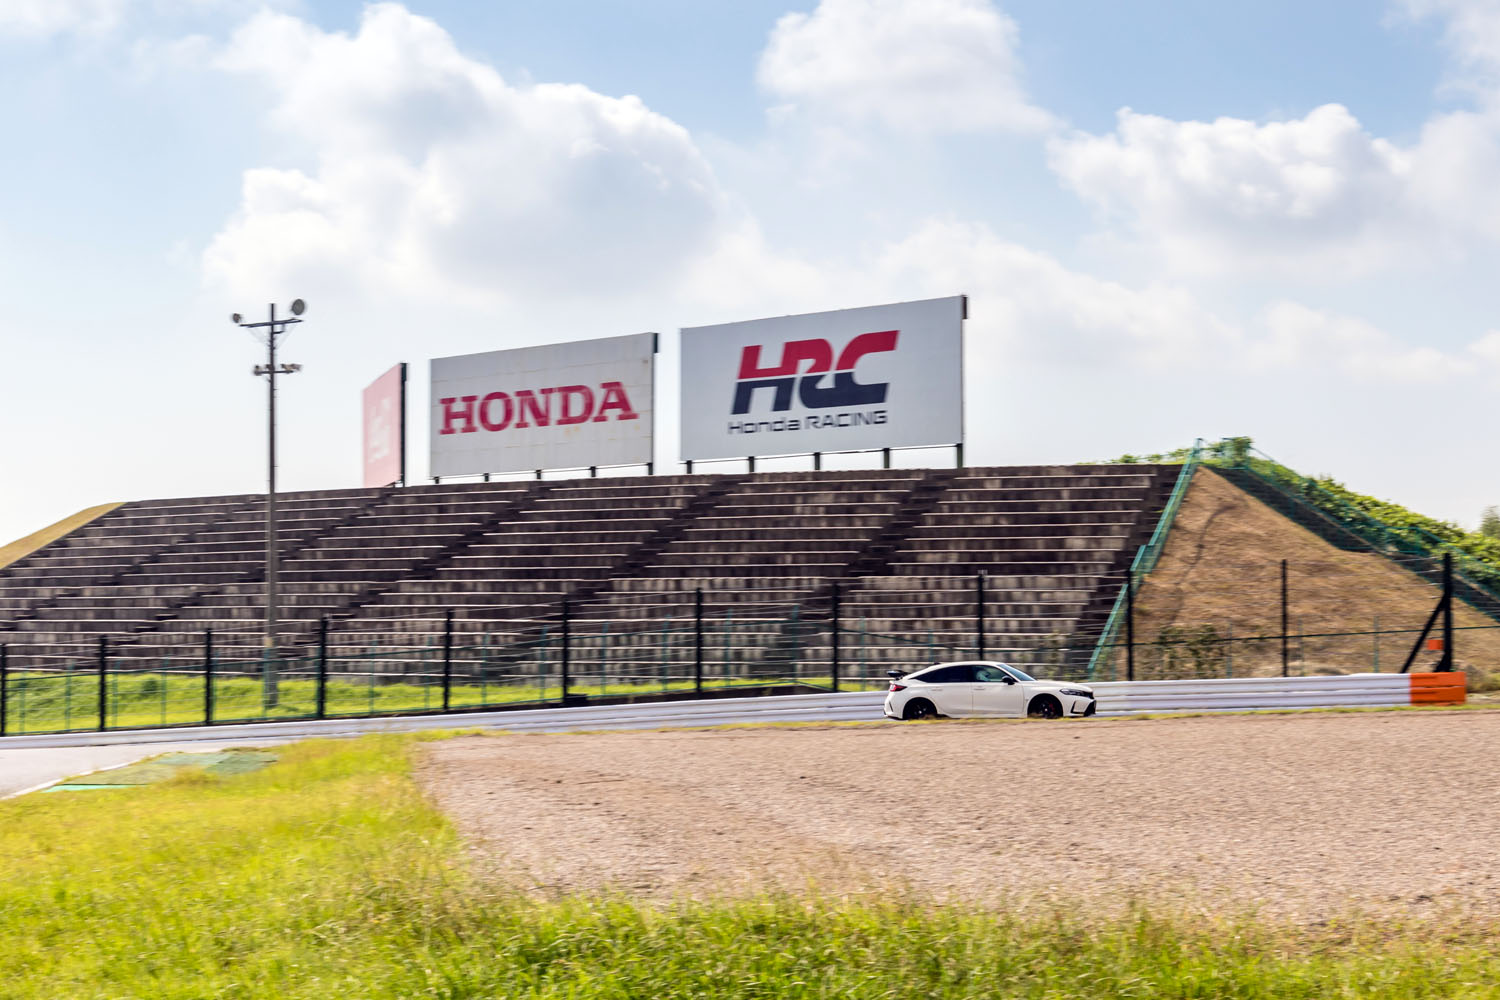 ホンダのモータースポーツ活動を統括するホンダ・レーシング（HRC）。最近では、モータースポーツのイメージを生かした高性能モデルの展開についても検討しているという。